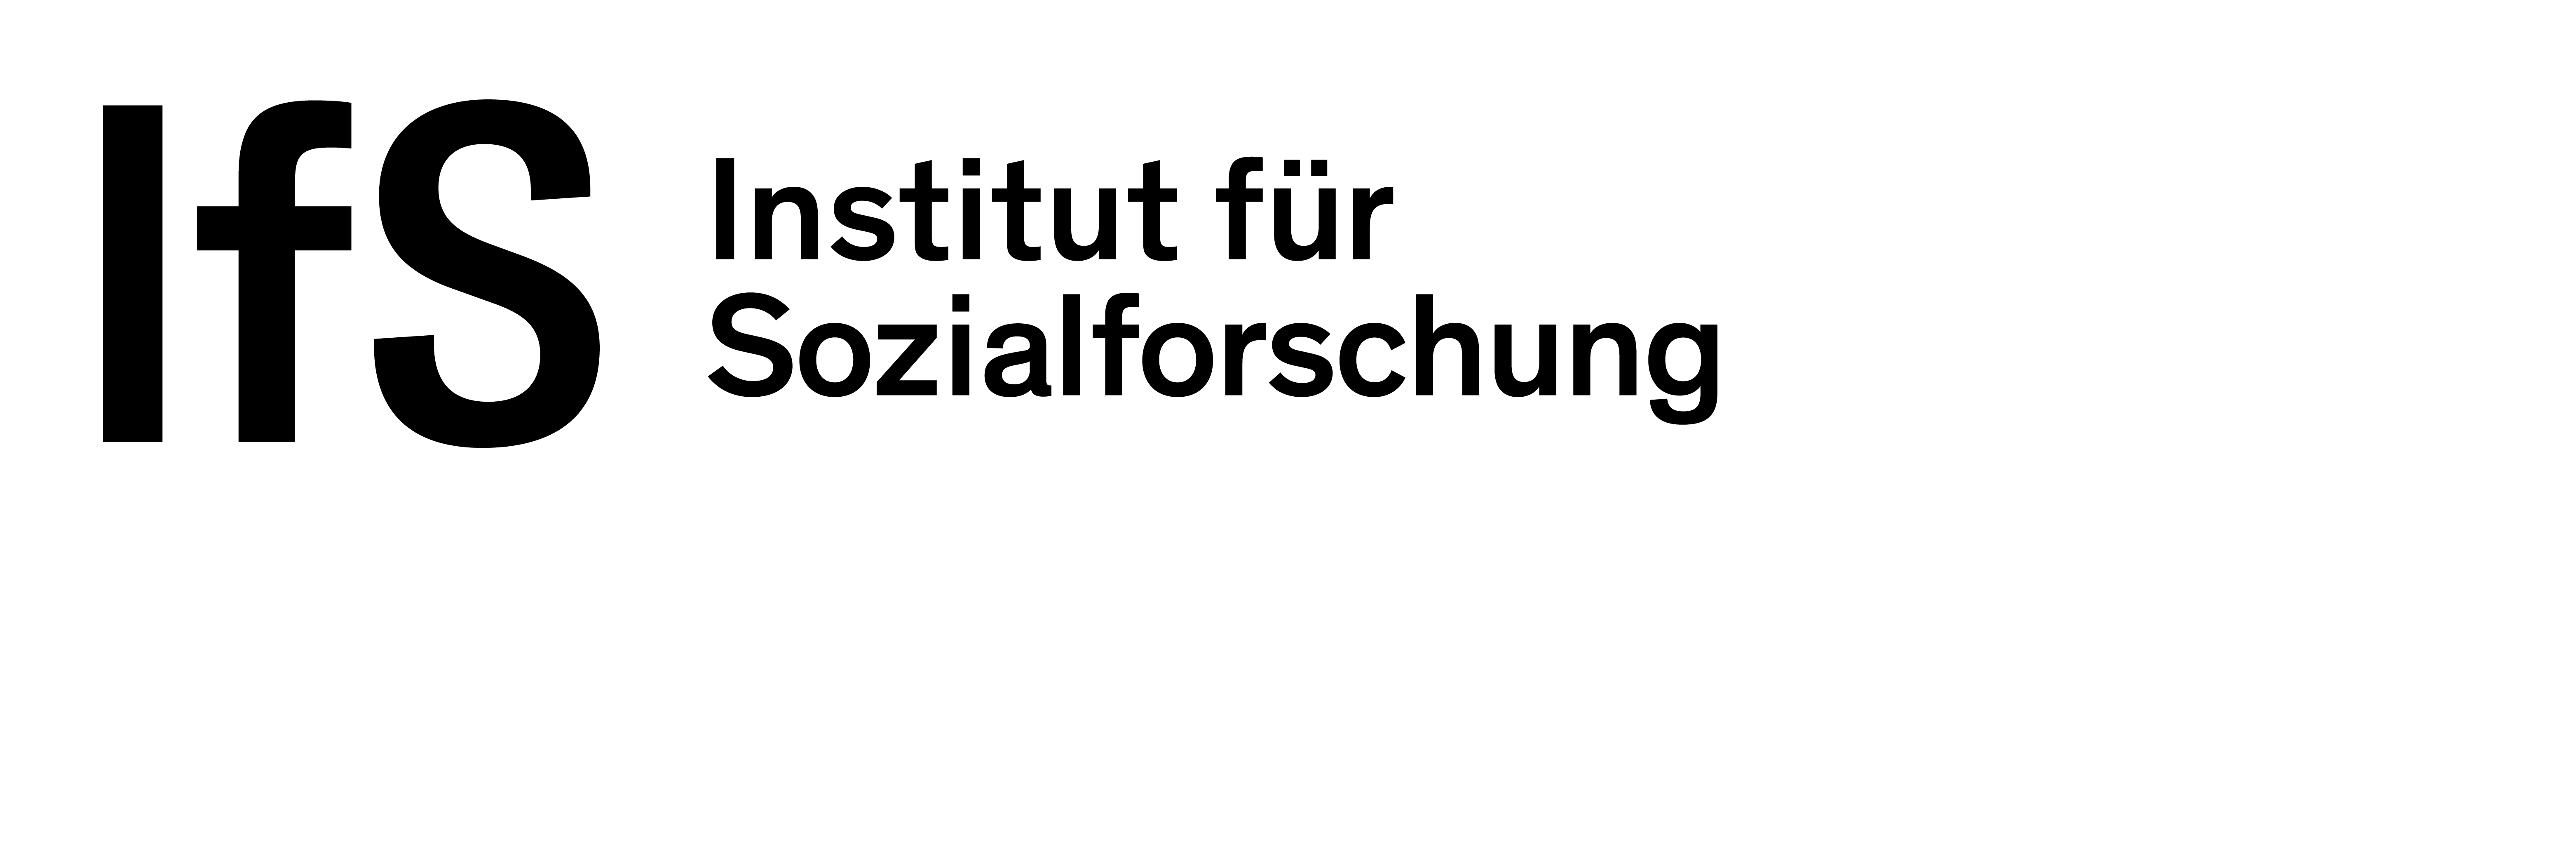 Frankfurter Institut für Sozialforschung